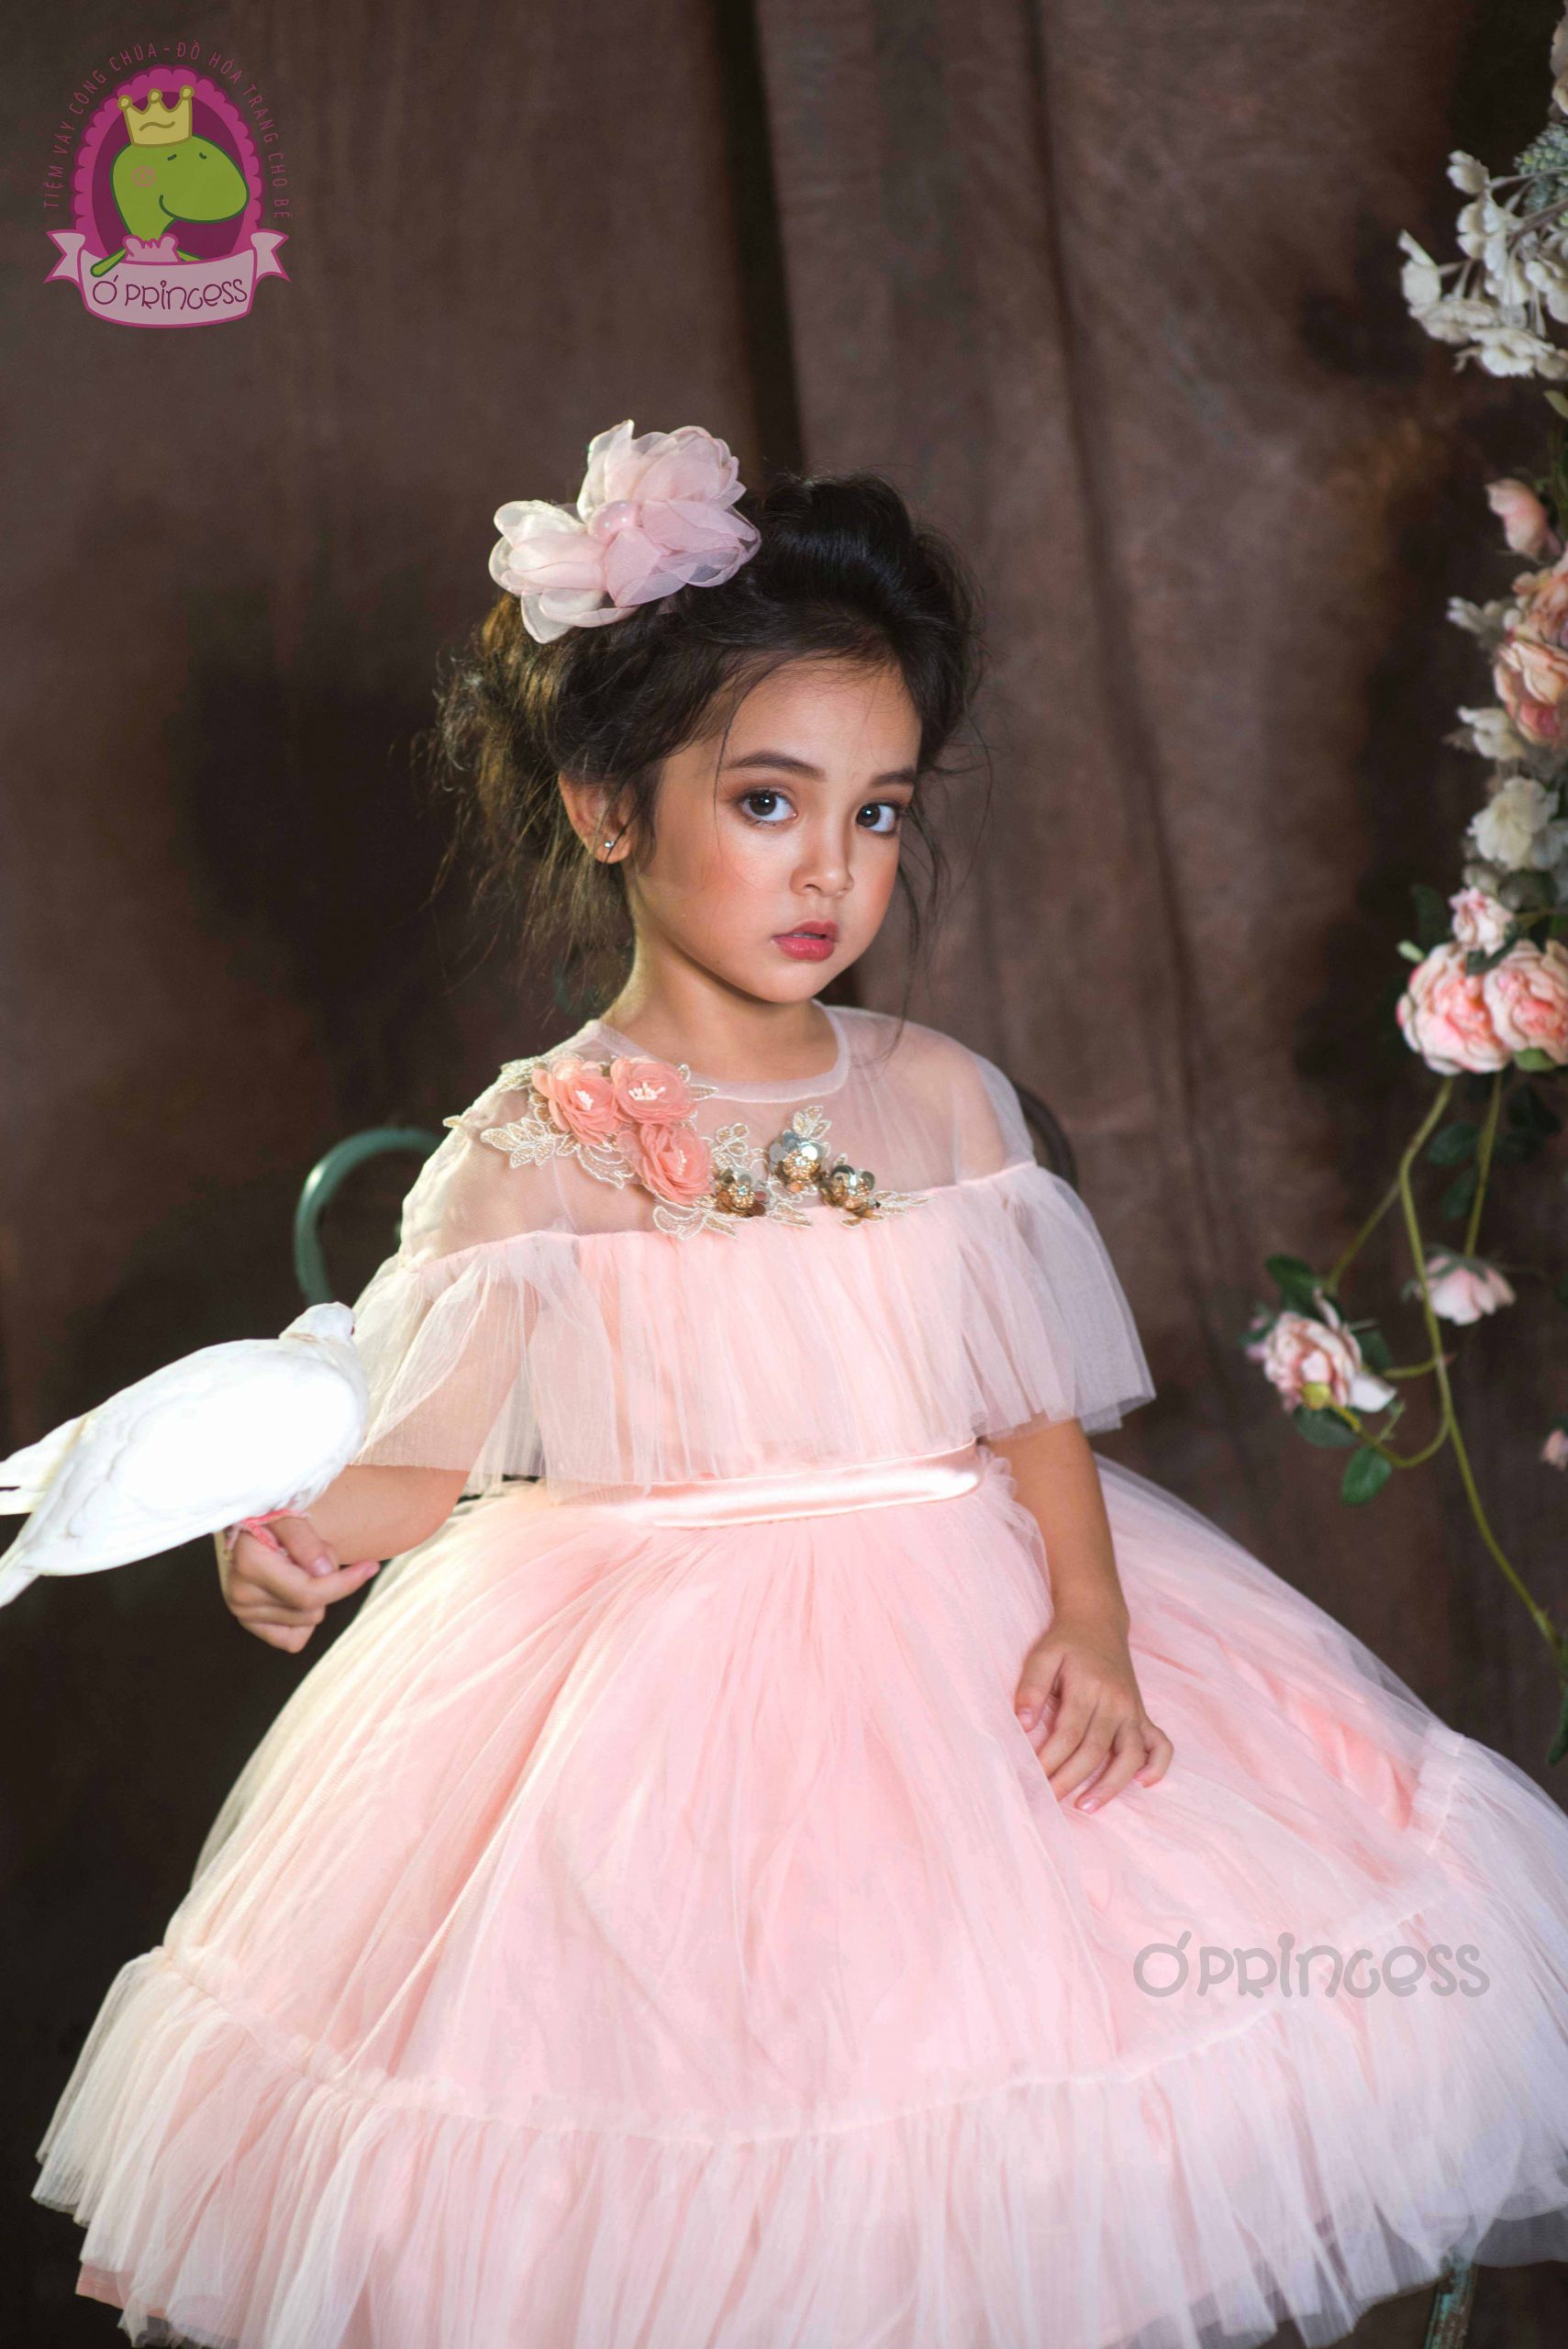 Ó Princess  thương hiệu chuyên thiết kế váy công chúa độc đáo cho bé gái   Báo Dân trí